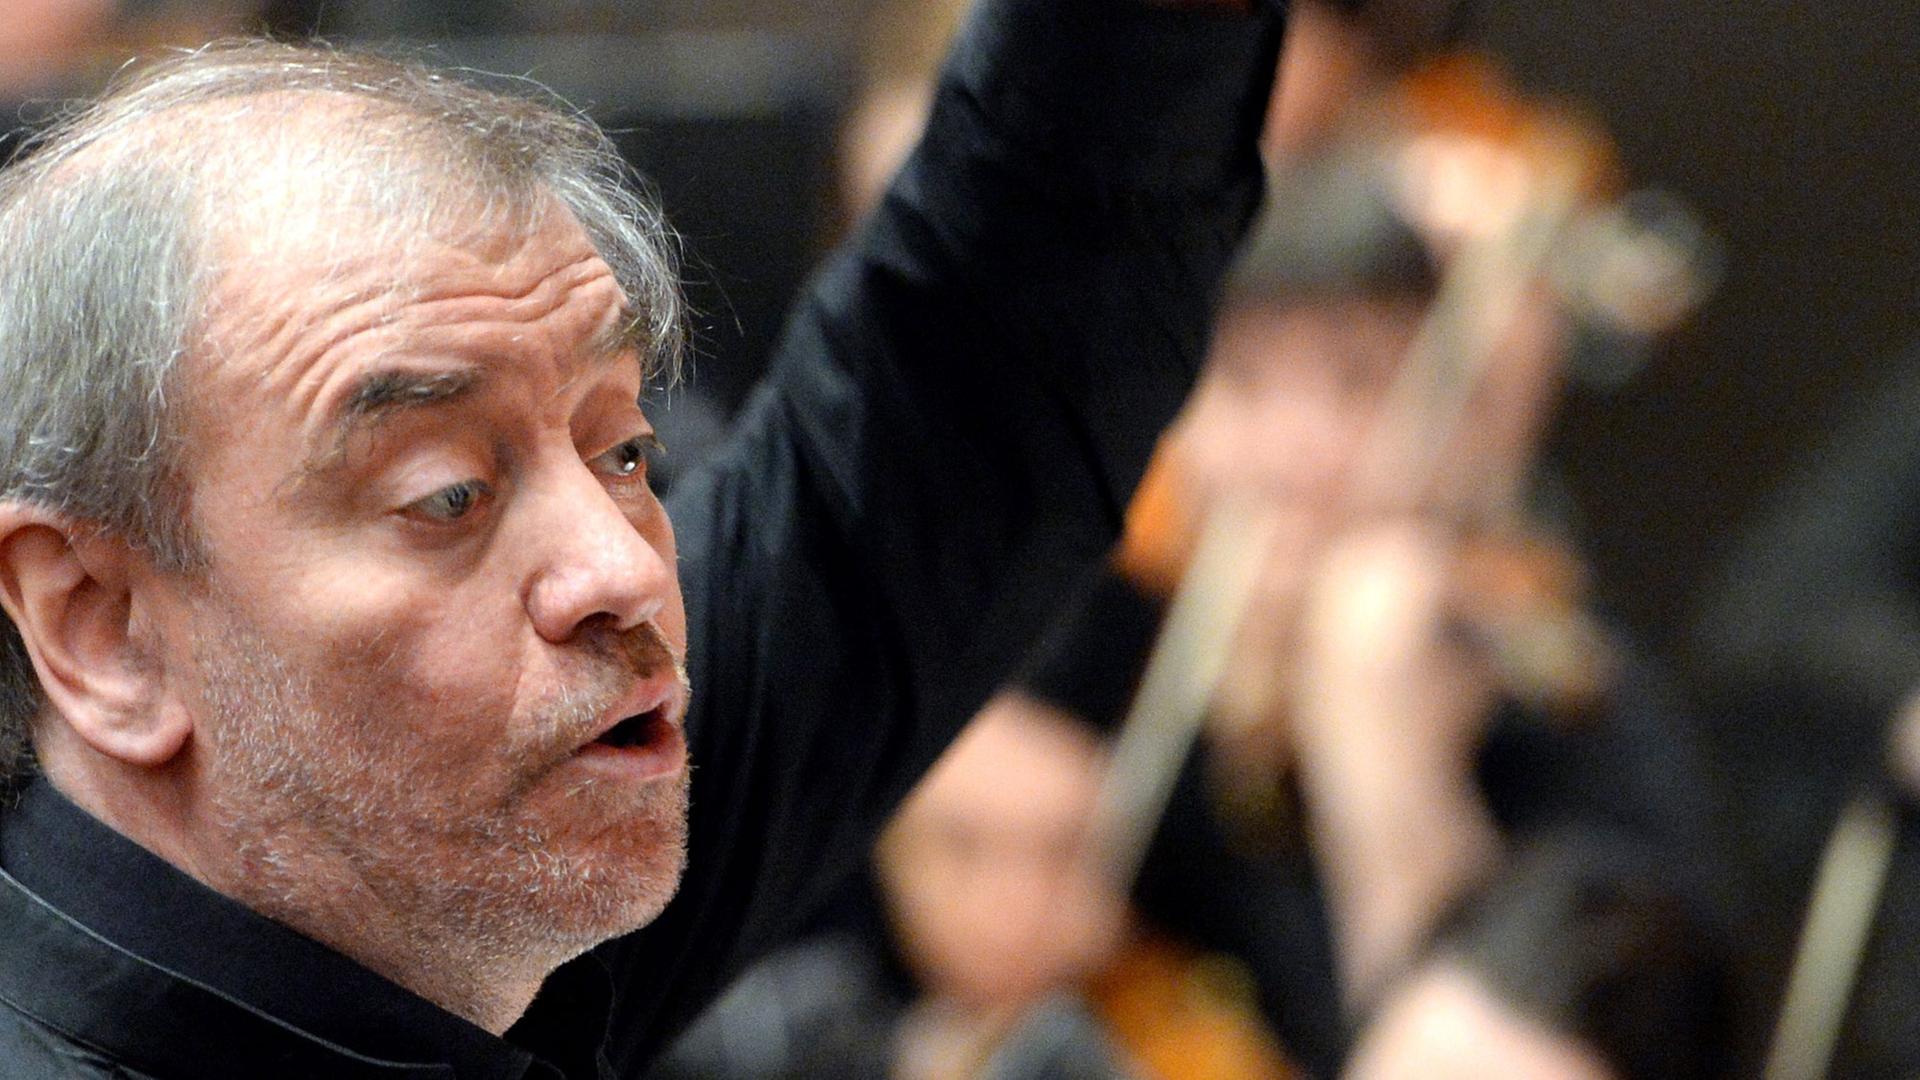 Der Intendant Waleri Gergijew dirigiert das Orchester des Mariinski-Theaters im russischen St. Petersburg.